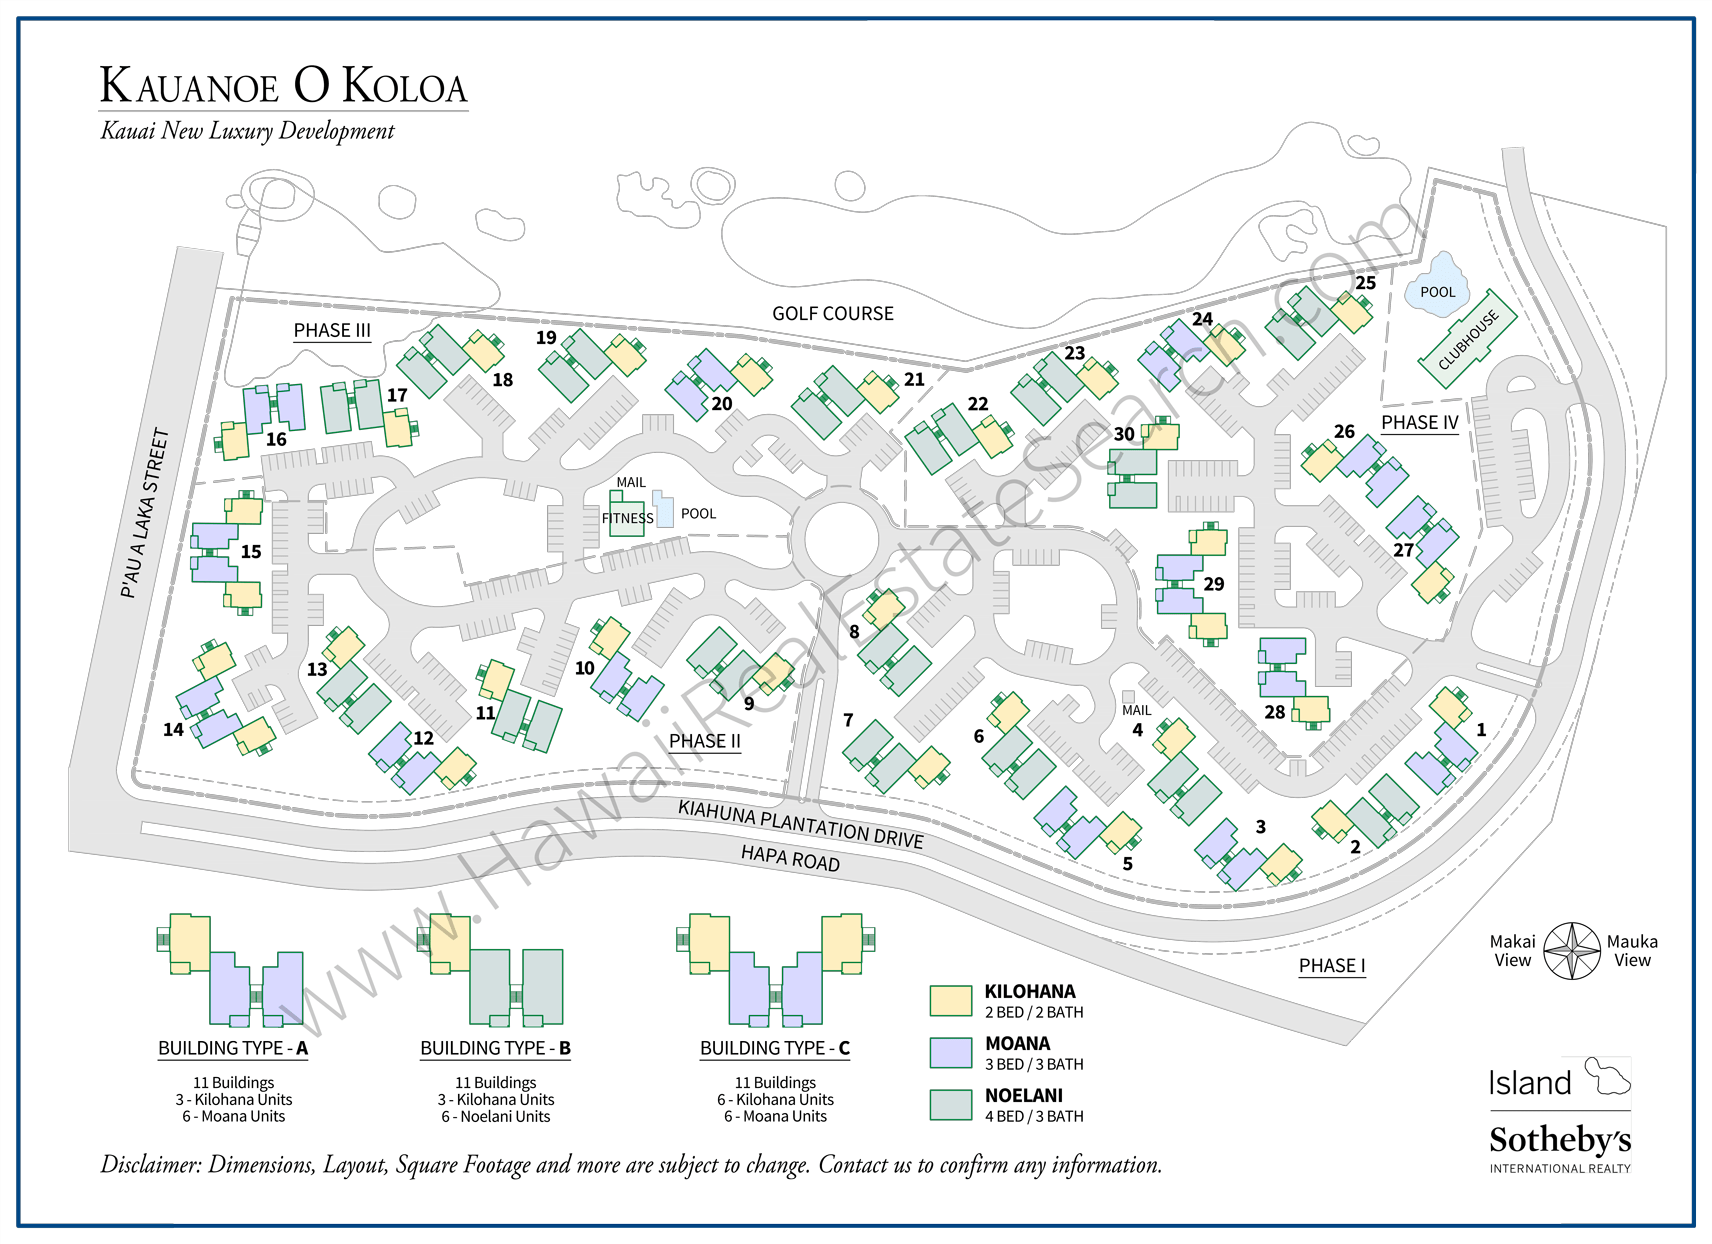 Kauanoe O Koloa Map - Detailed all phases